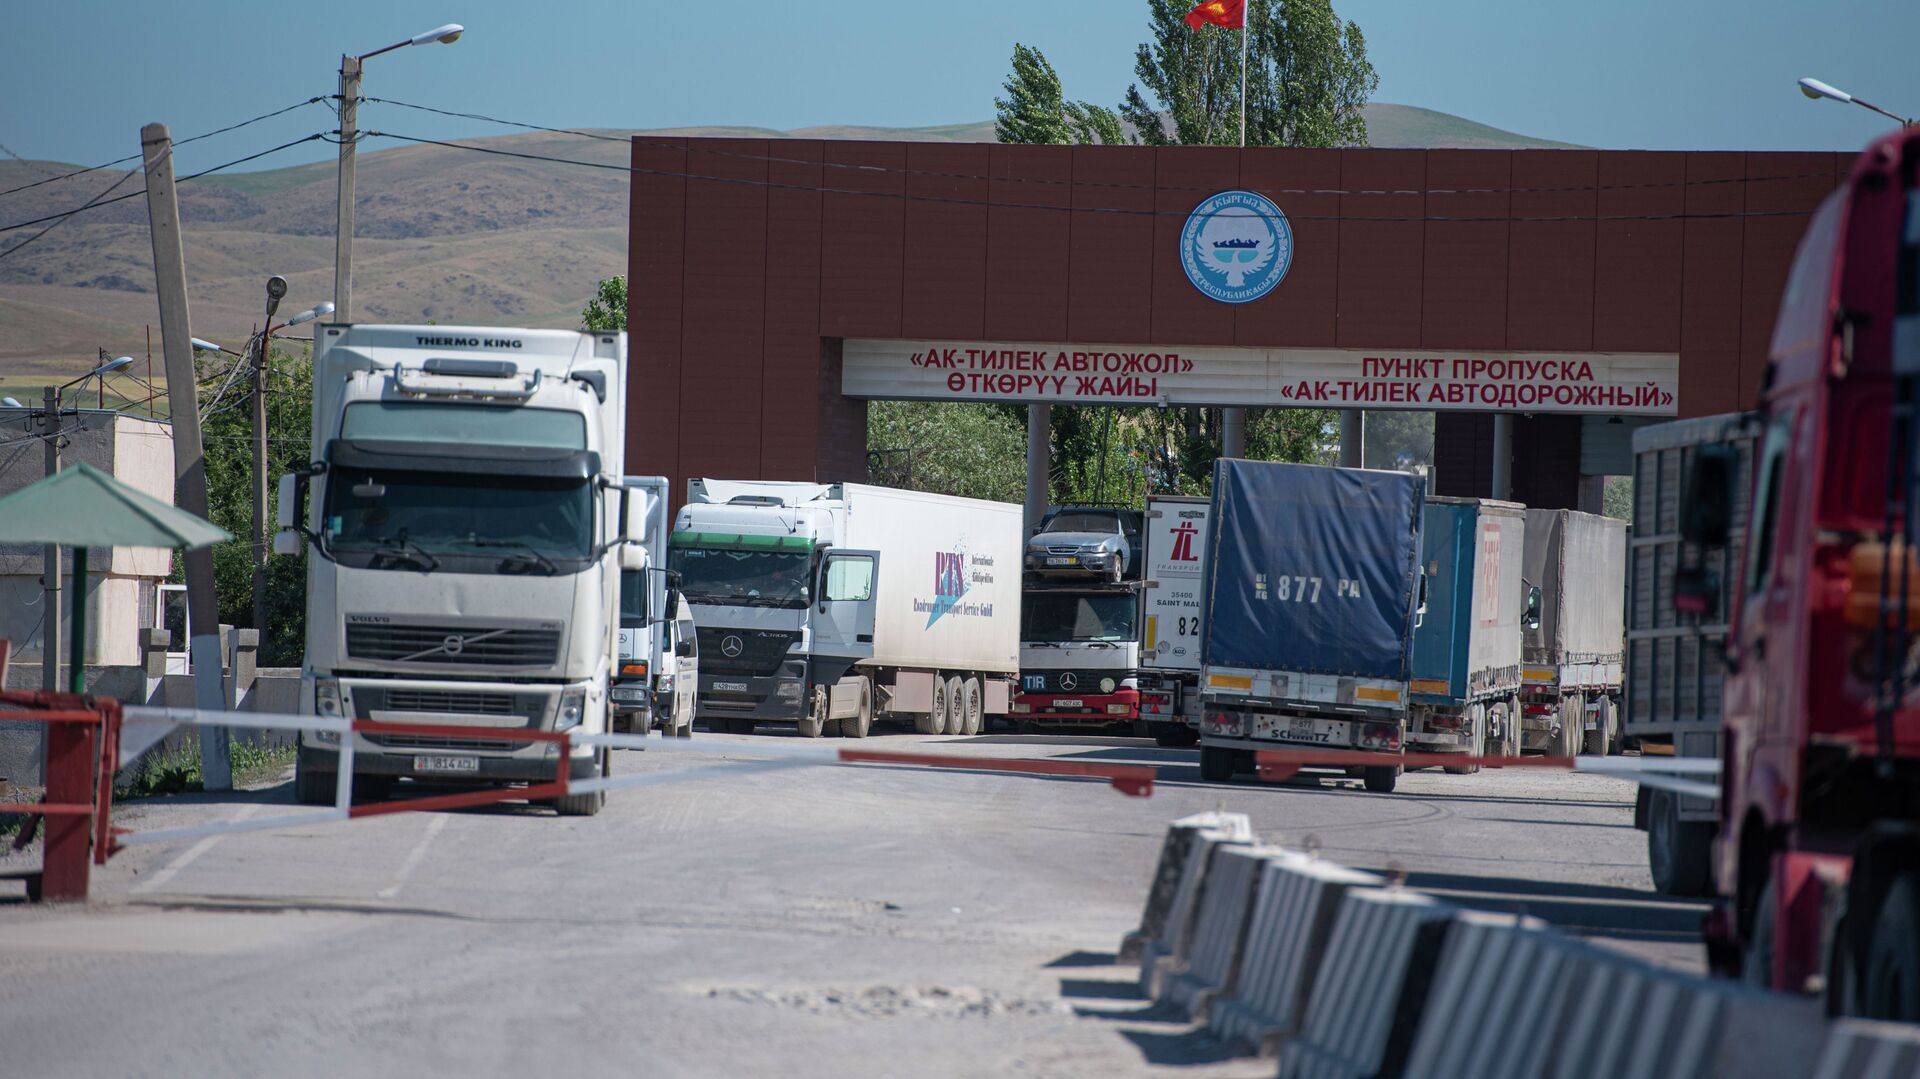 Ограничений не вводили, пропускаем в пределах среднесуточных значений - КНБ Казахстана пояснил ситуацию на границе с КР